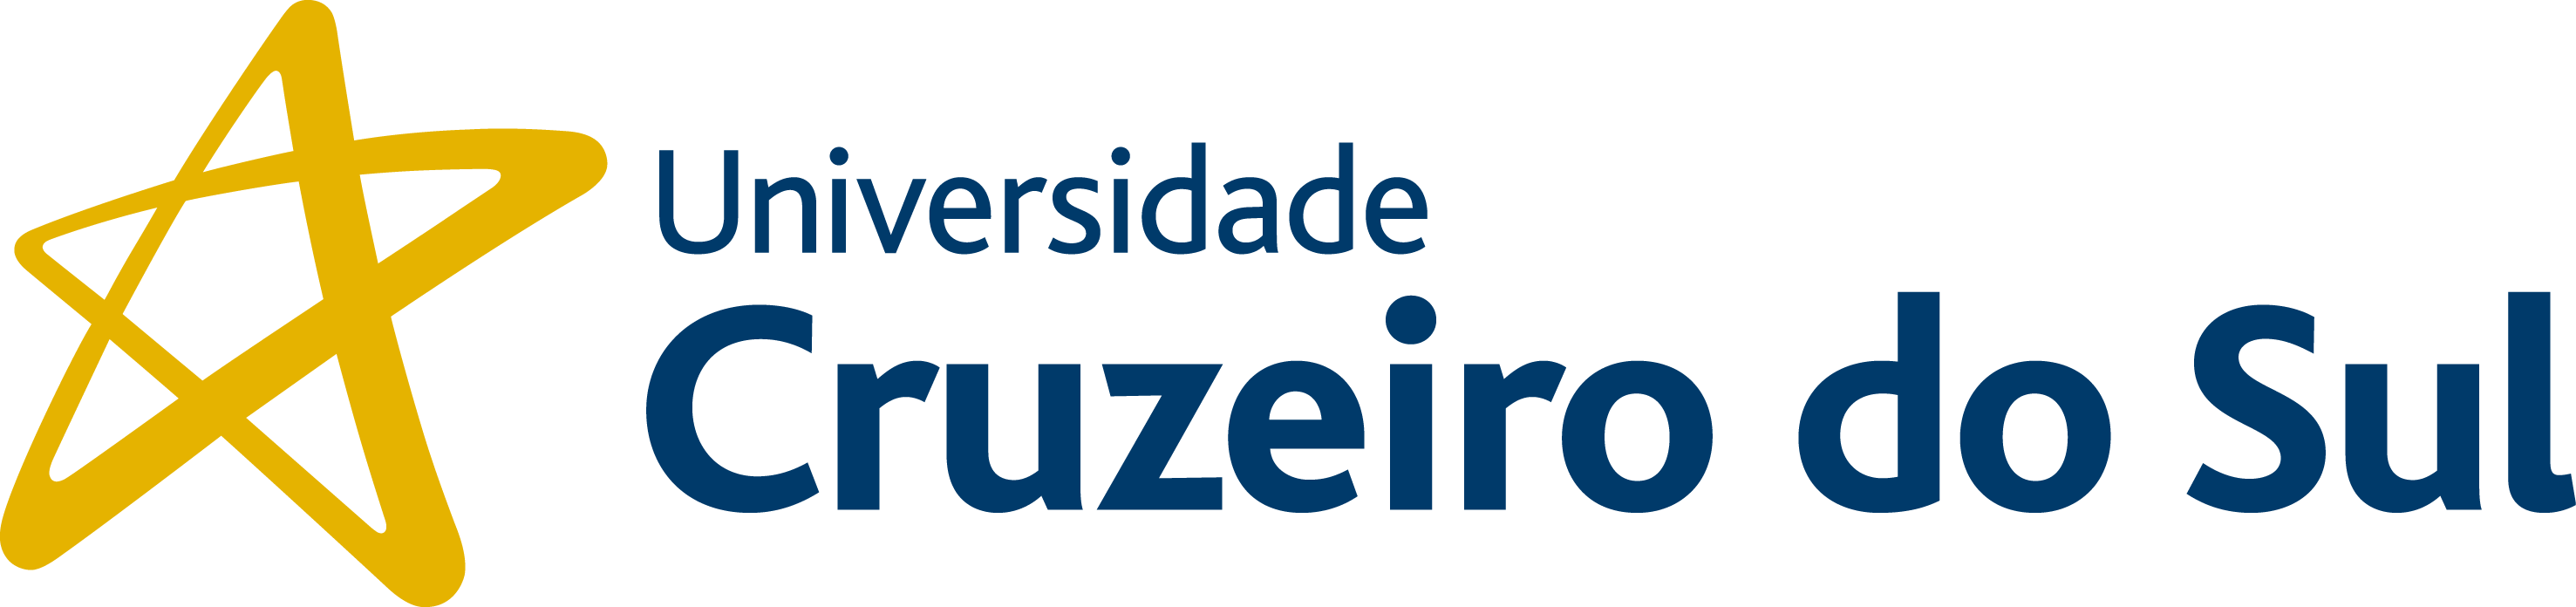 Universidade Cruzeiro do Sul - Campus Paulista